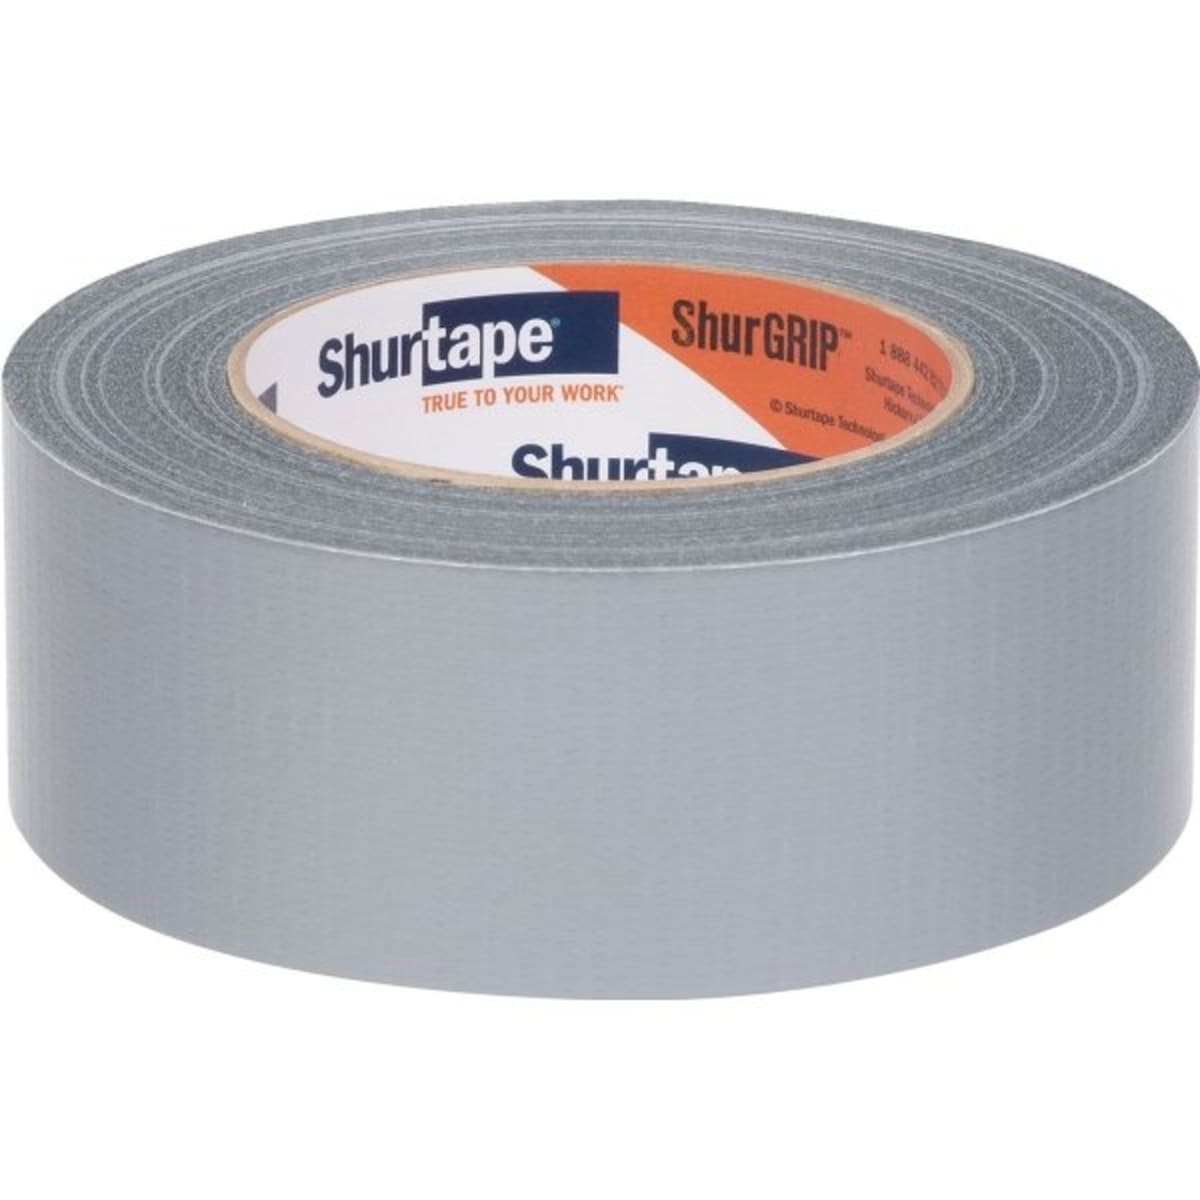 Shurtape CP 105 2 7/8 x 60 Yards Natural General Purpose Grade Masking Tape